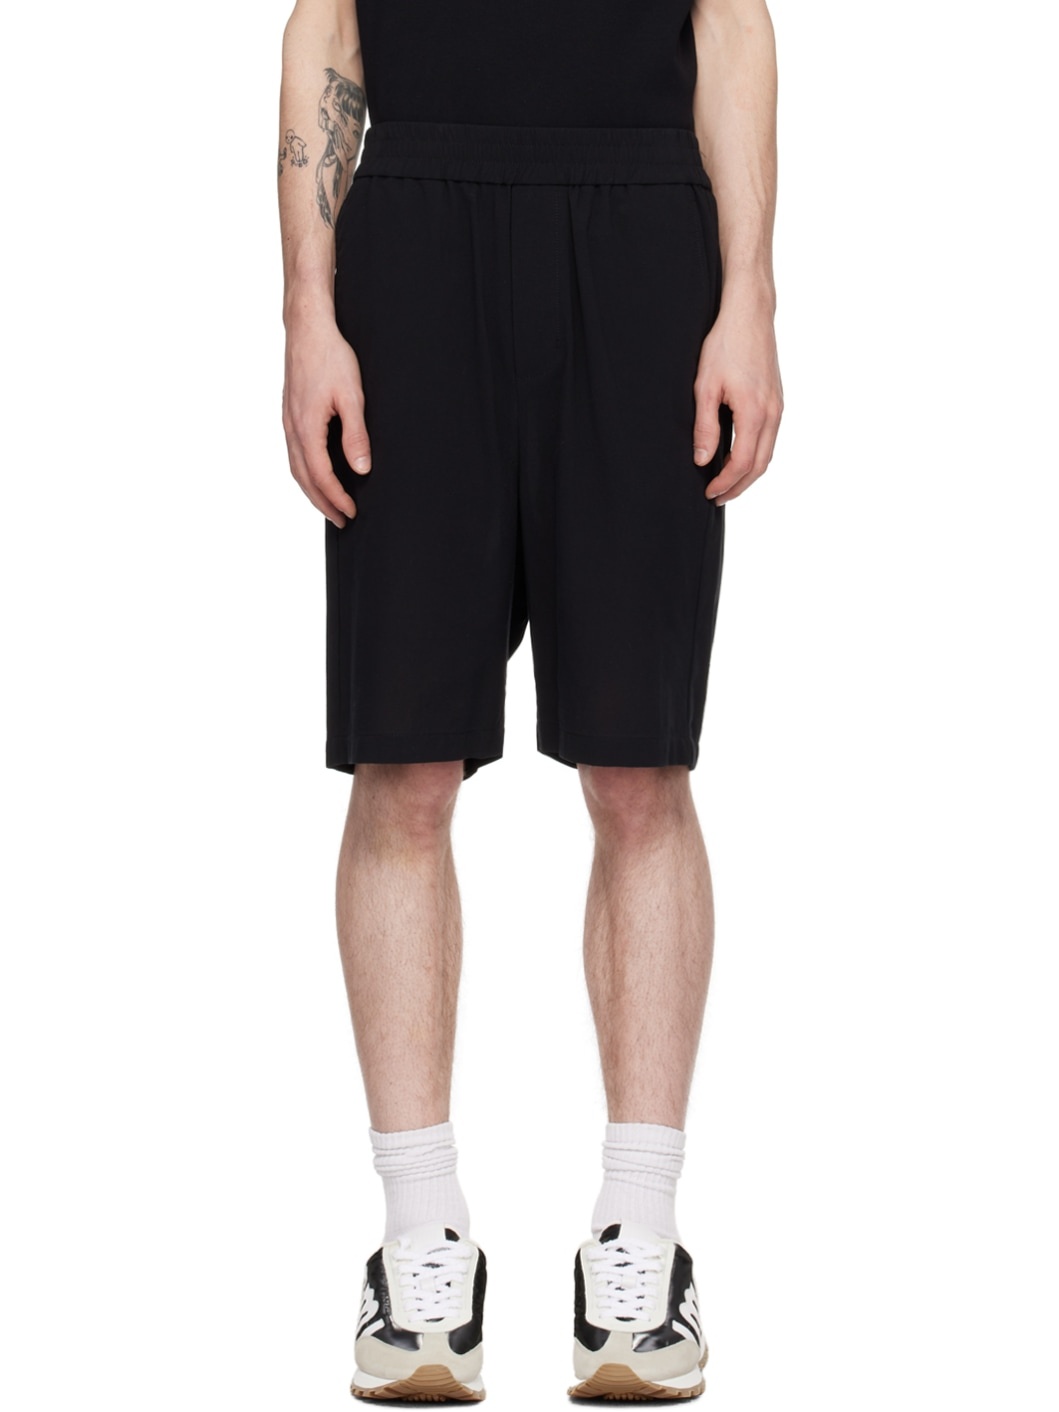 Black Elasticized Shorts - 1